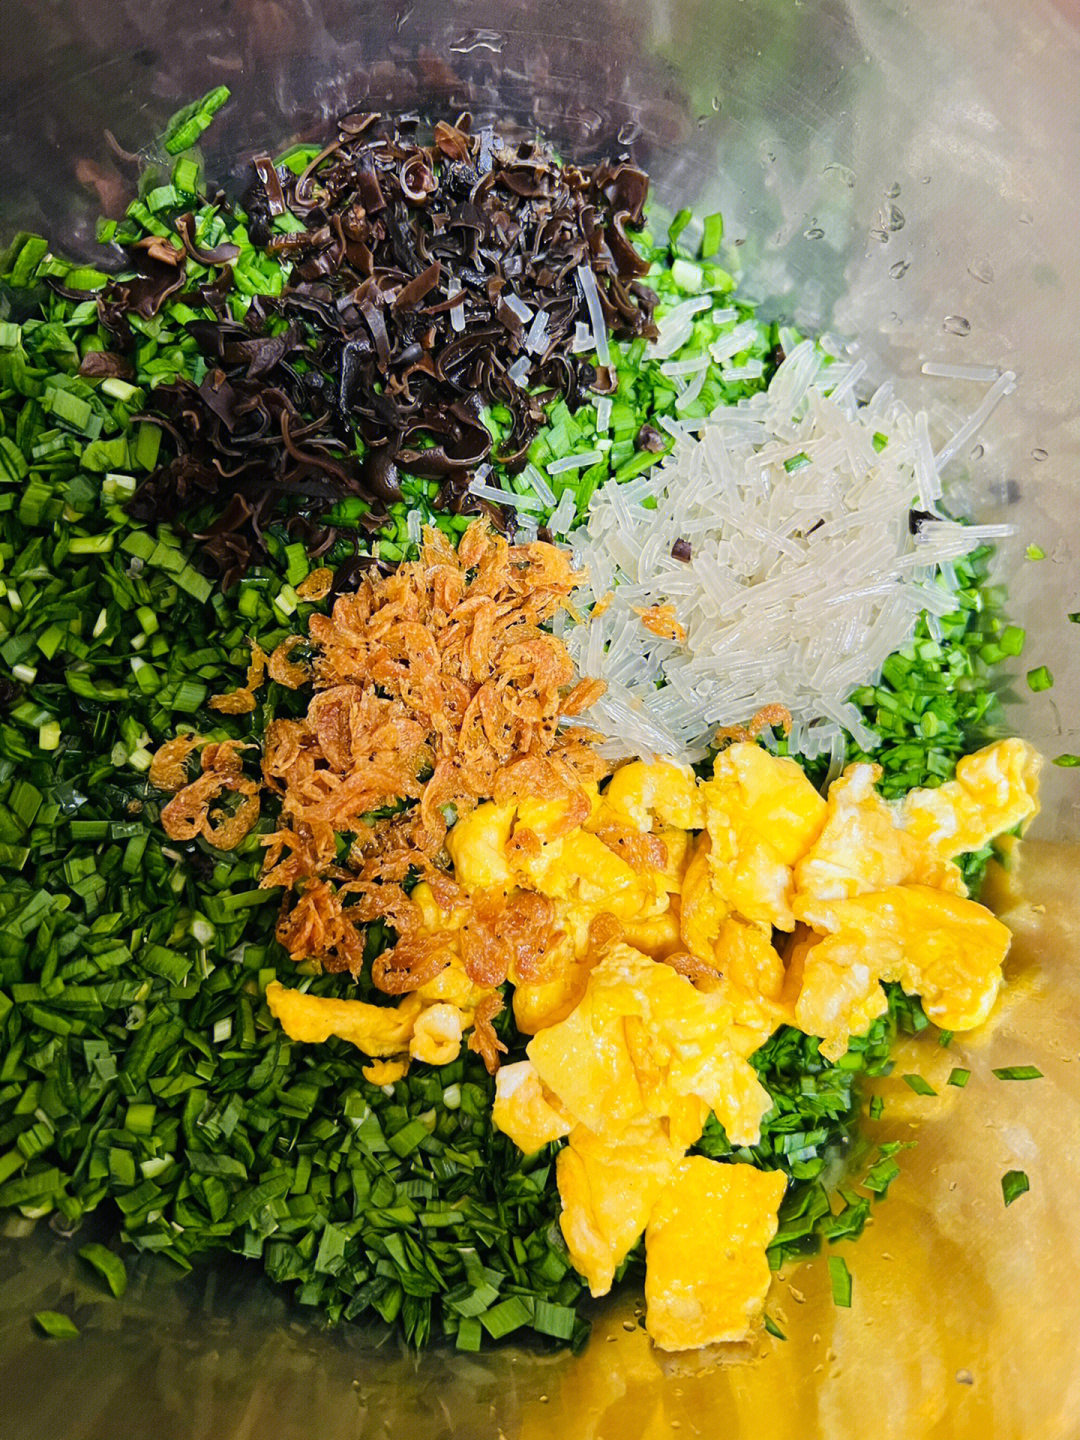 馅的做法:韭菜切碎,加入一勺油拌匀,这样不容易出汤哦鸡蛋和虾皮炒熟